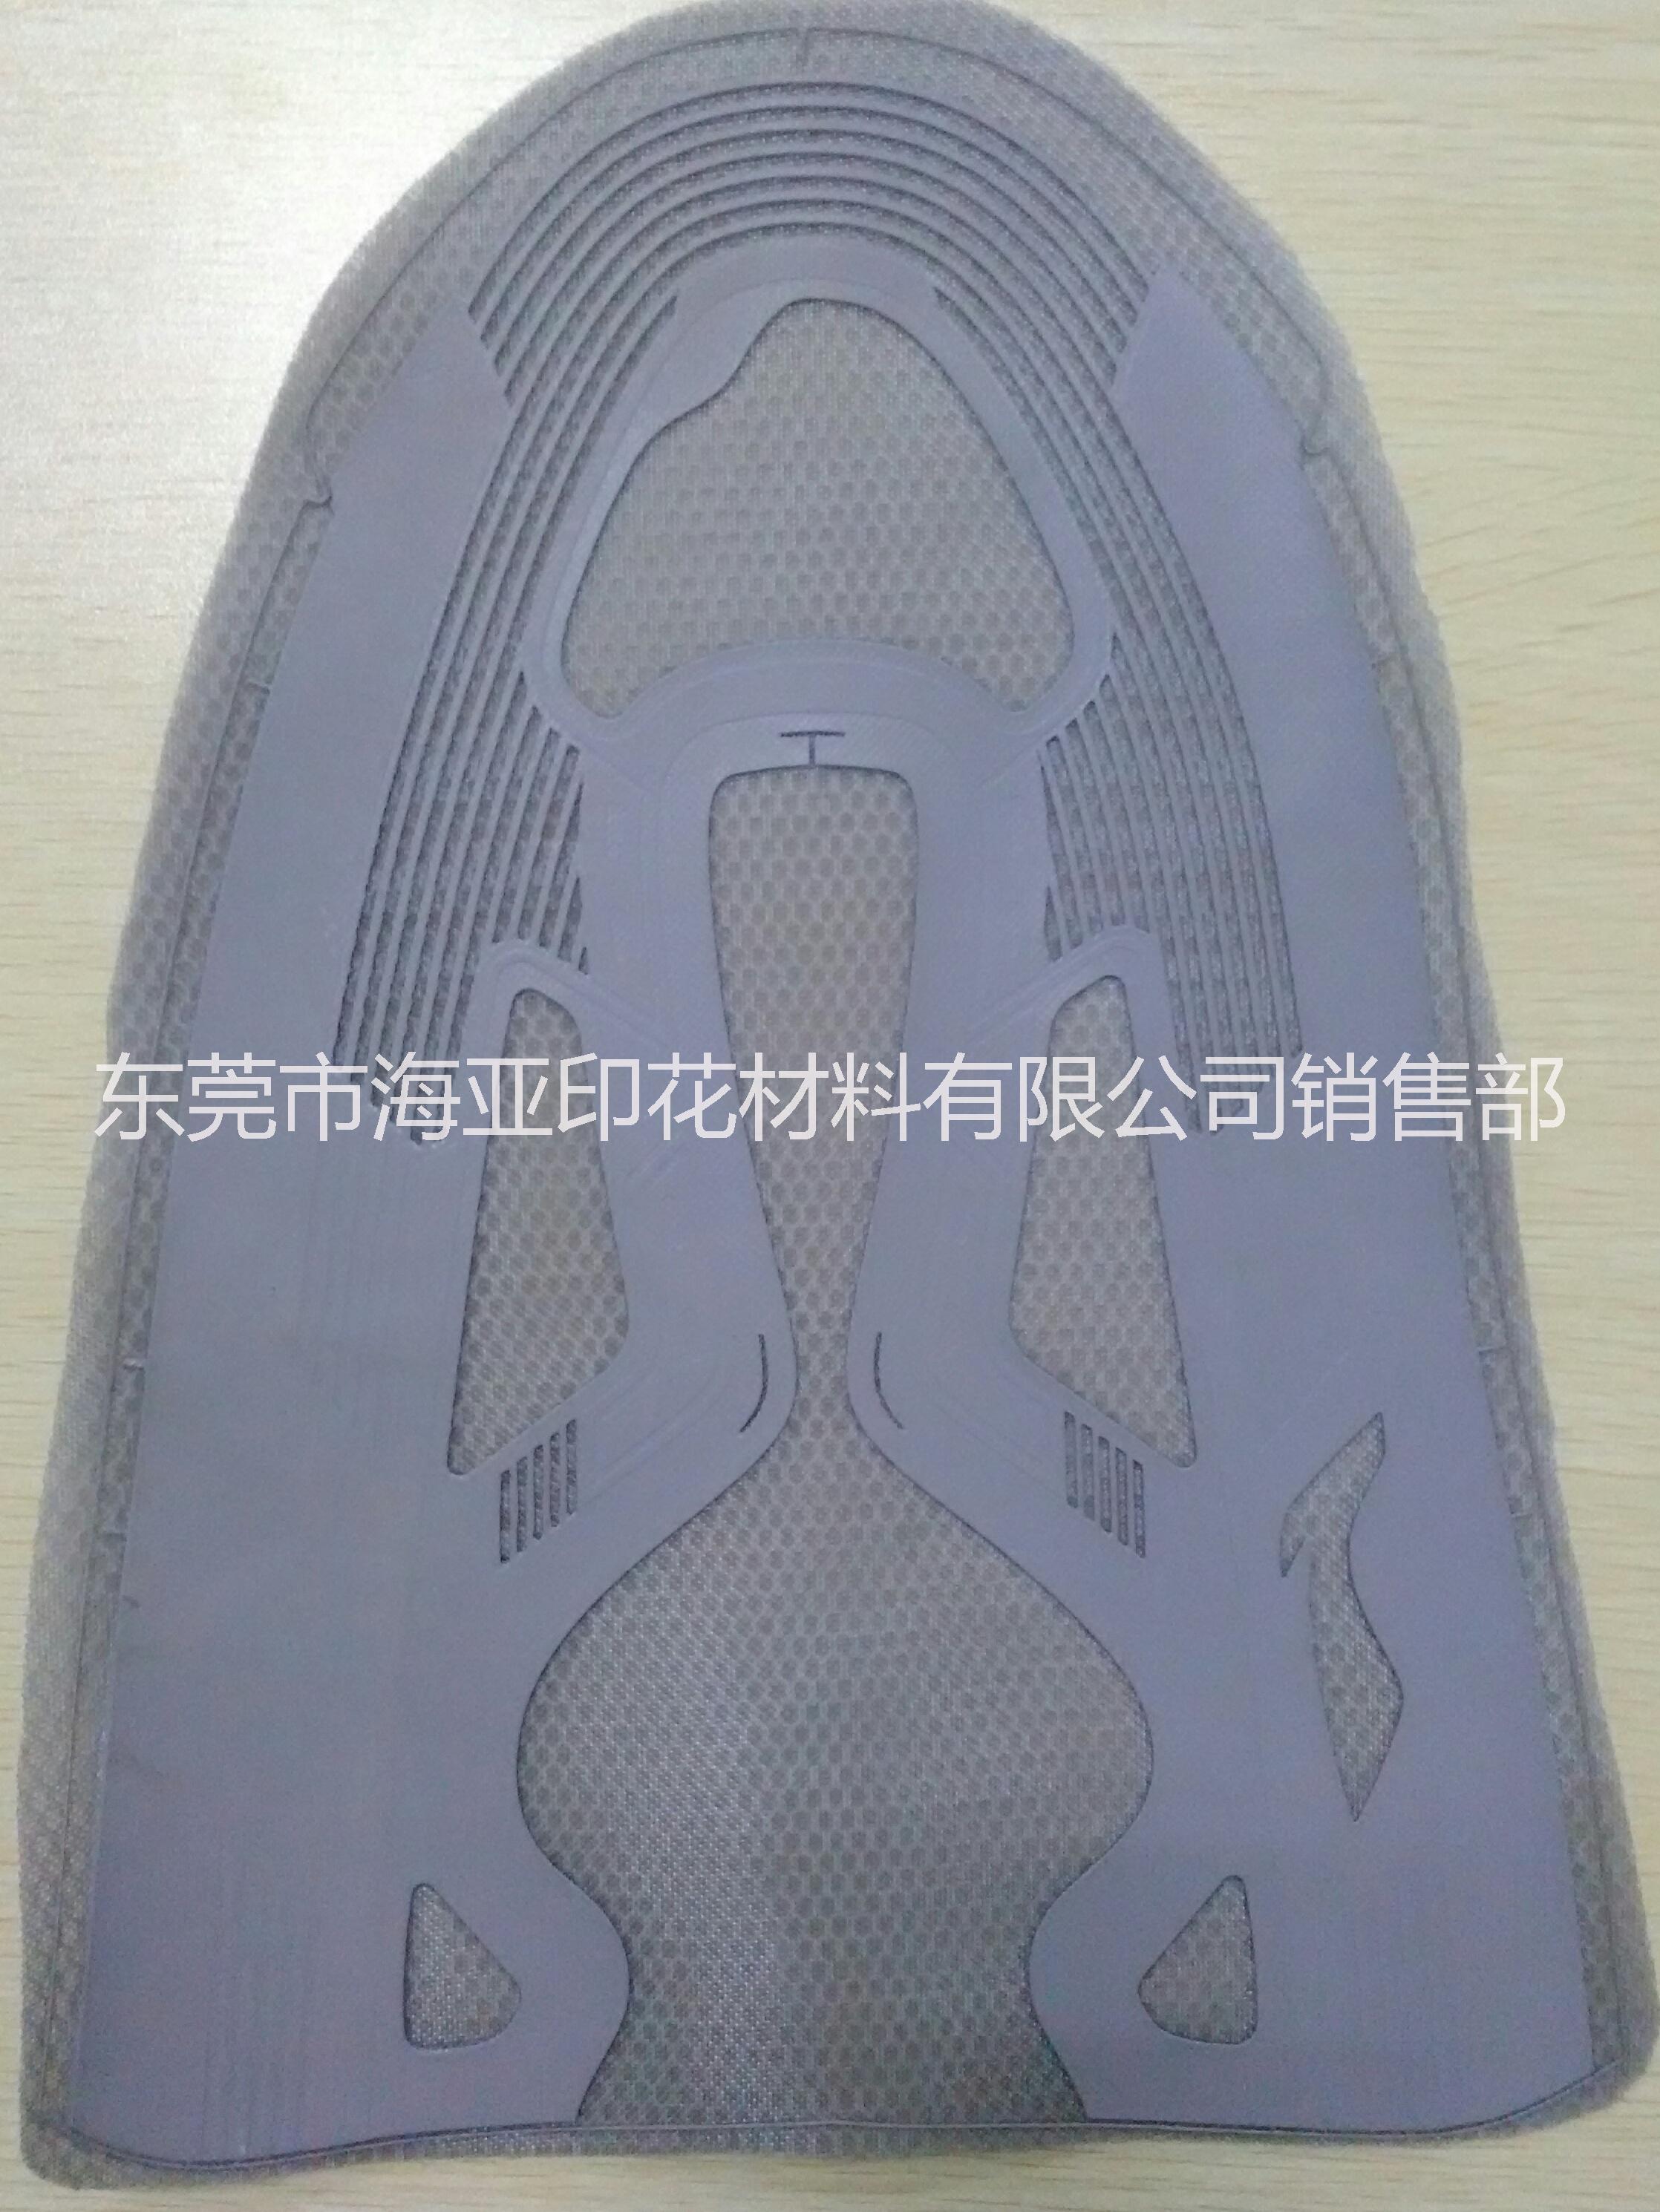 鞋材印花专用水性立体金油供应用于鞋材印花的鞋材印花专用水性立体金油